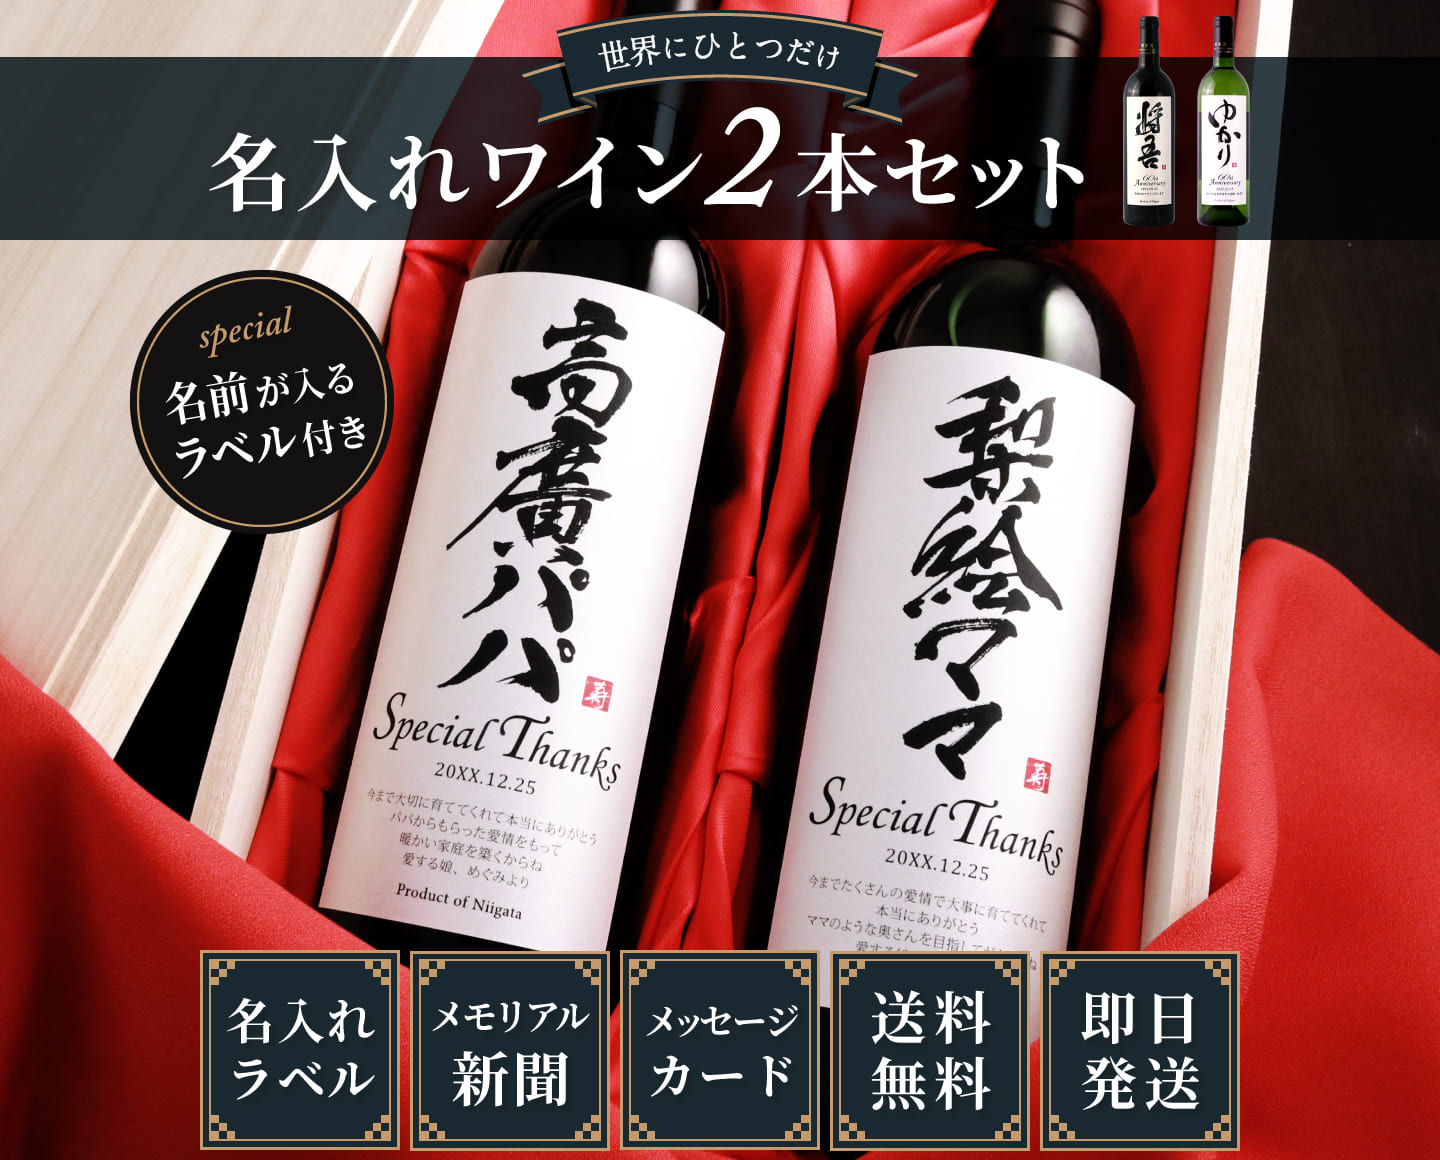 傘寿に贈る名入れ漢字ワイン 80年前の誕生日の新聞と桐箱が付いた豪華セット